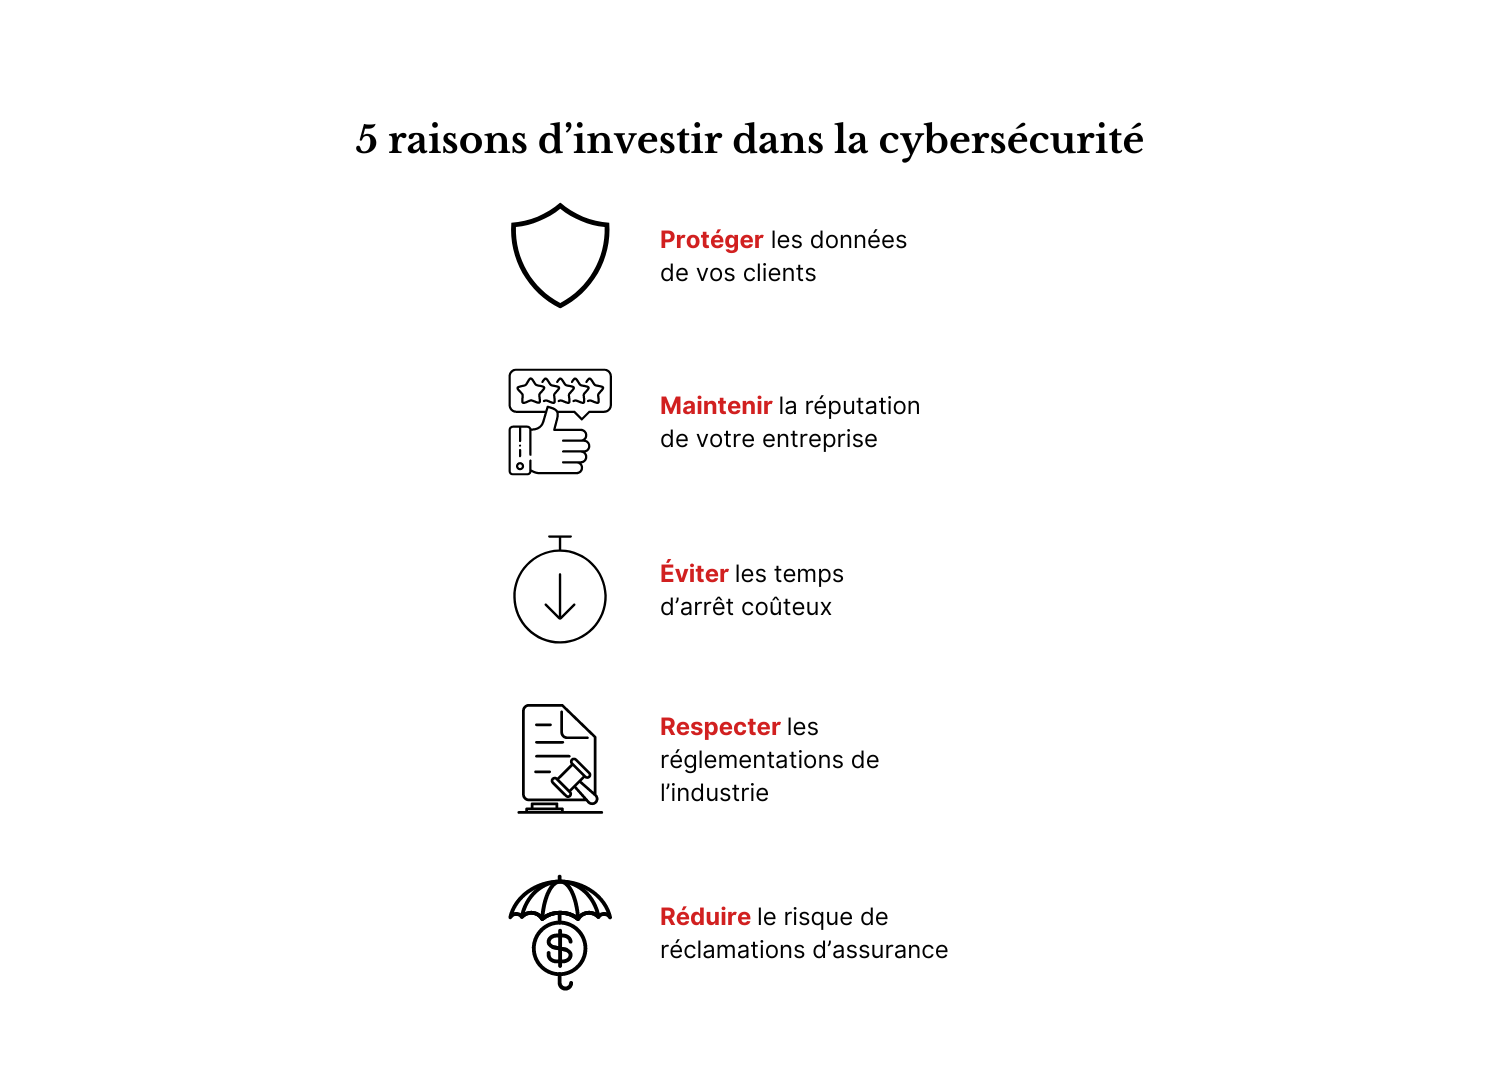 Une infographie présentant 5 raisons d'investir dans la cybersécurité.